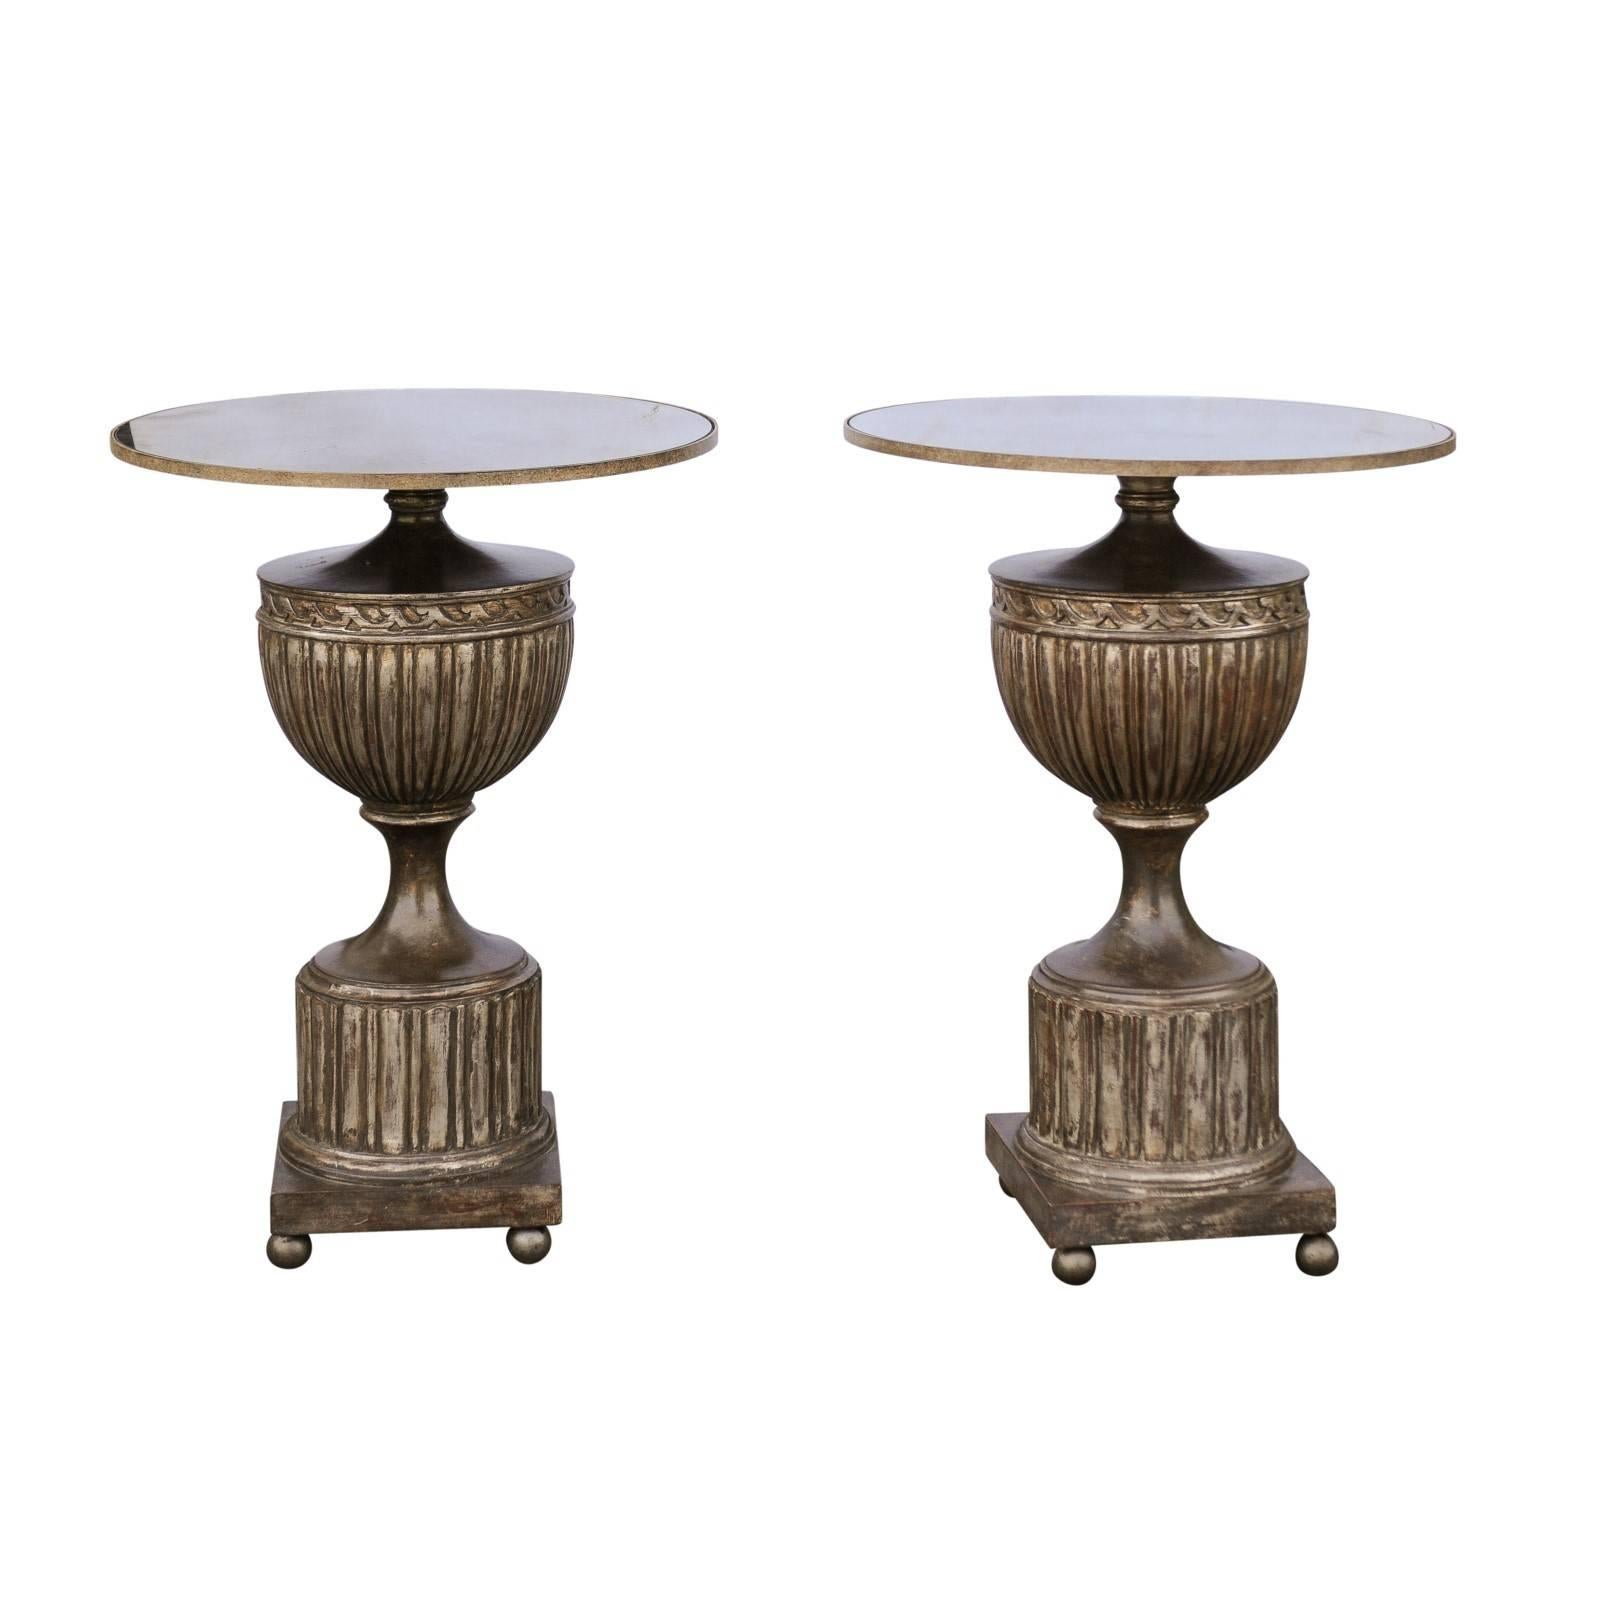 Paire de tables d'appoint italiennes des années 1950 en forme d'urne avec plateau en miroir et finition argent bruni